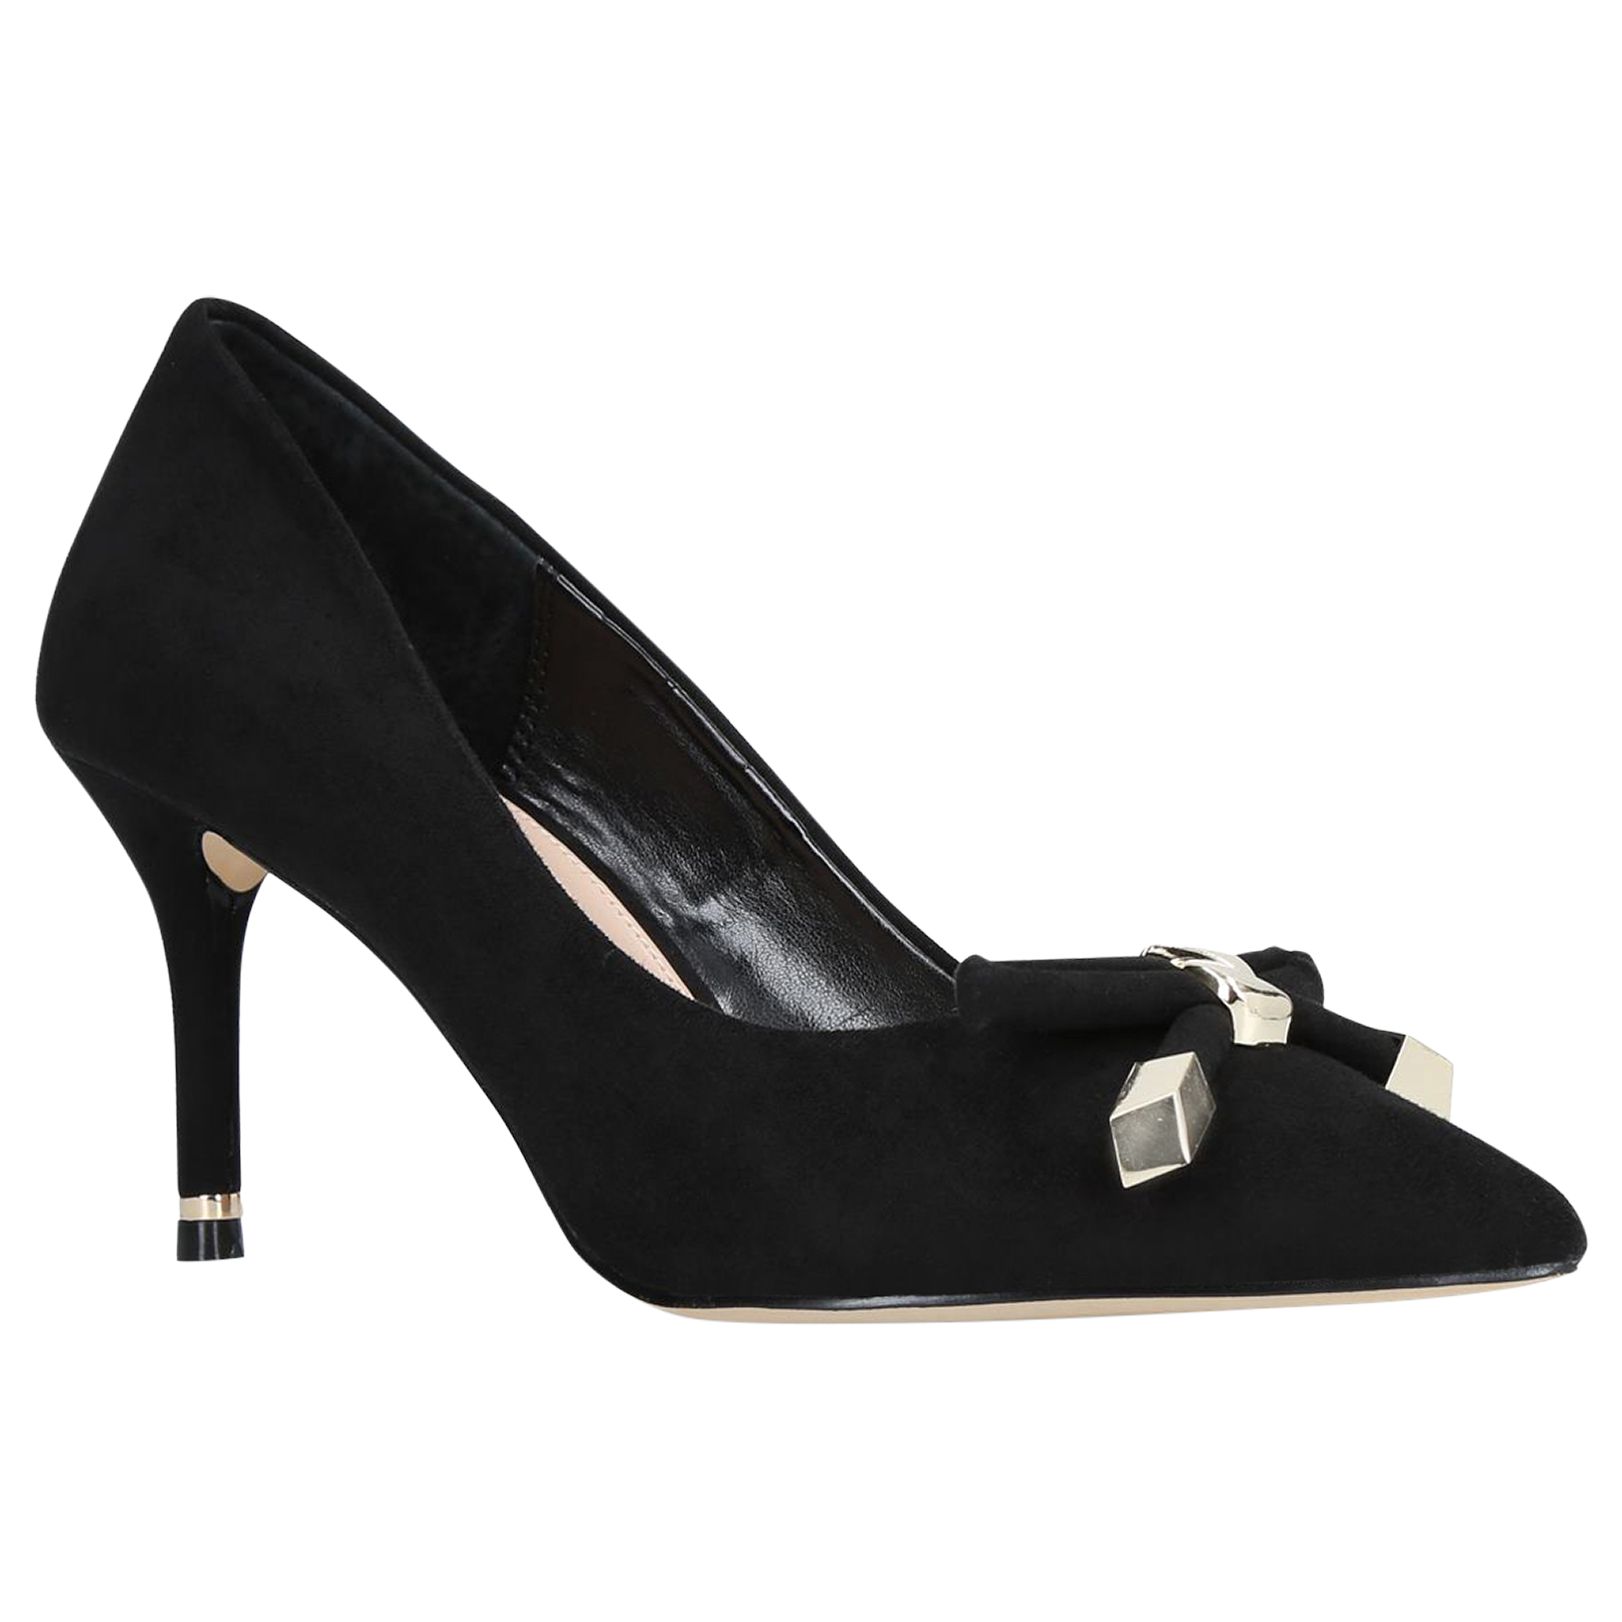 Carvela Kupid Bow Stiletto Heel Court Shoes, Black, 9